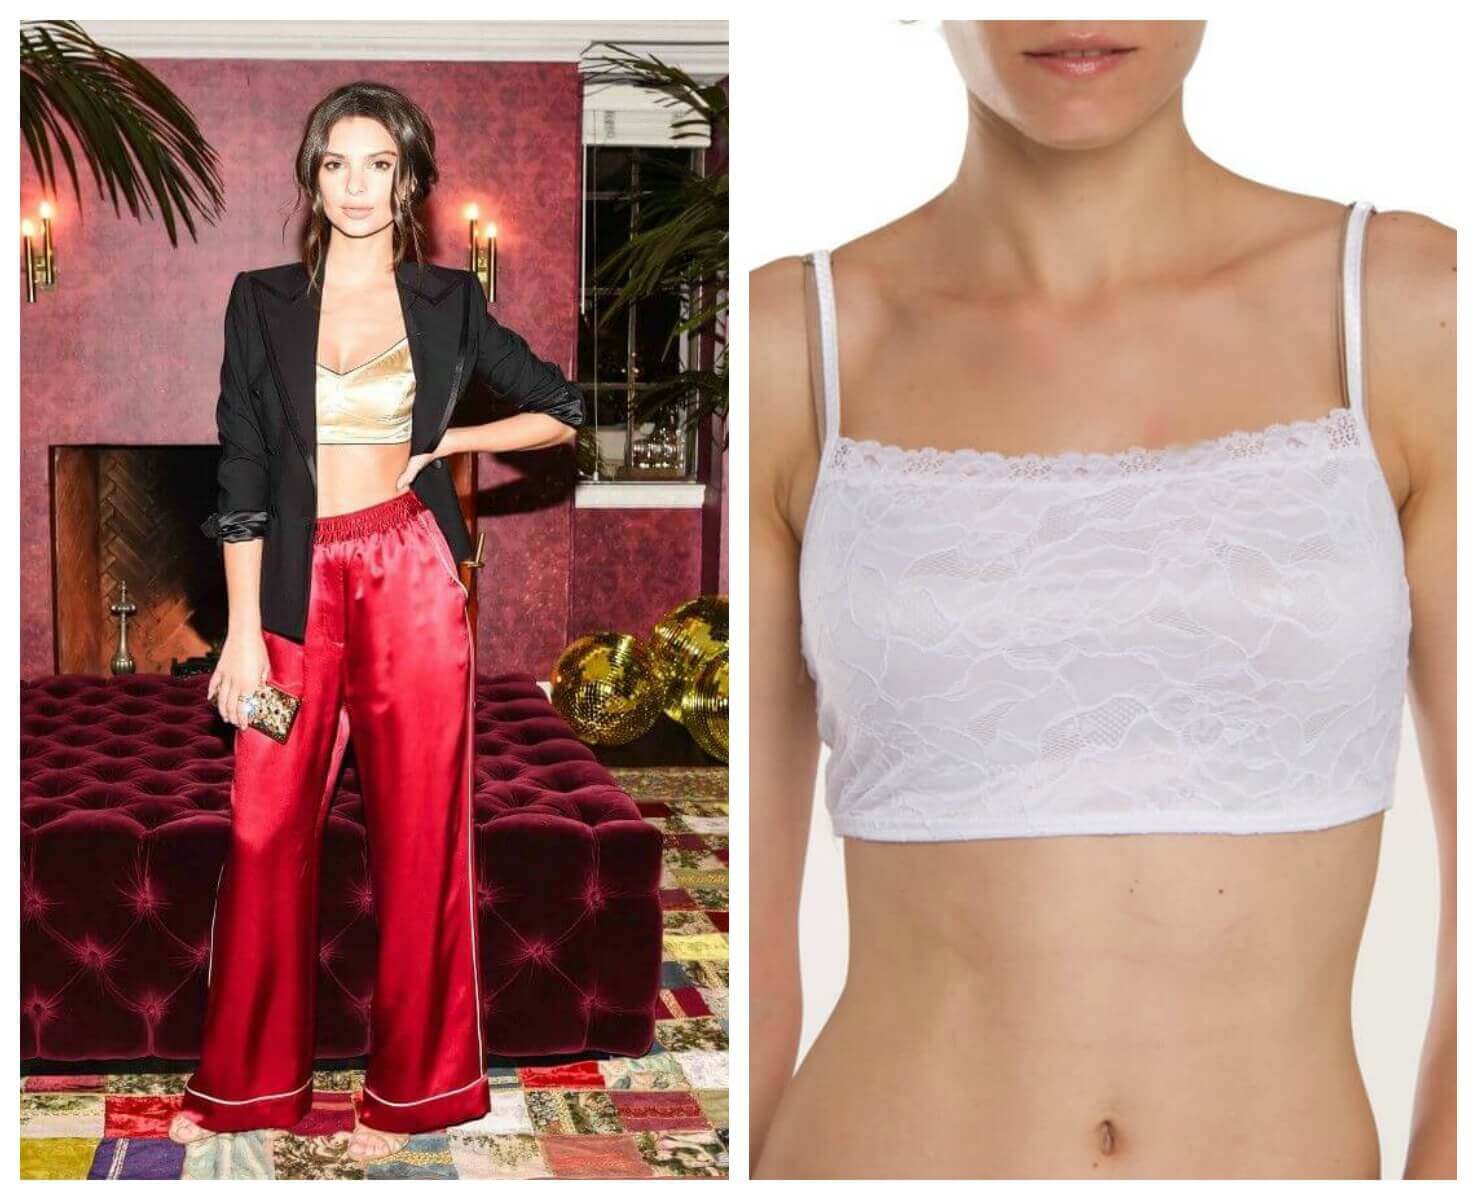 Trending: 90's Inspired Slip Dress Over Tee – Bra Doctor's Blog